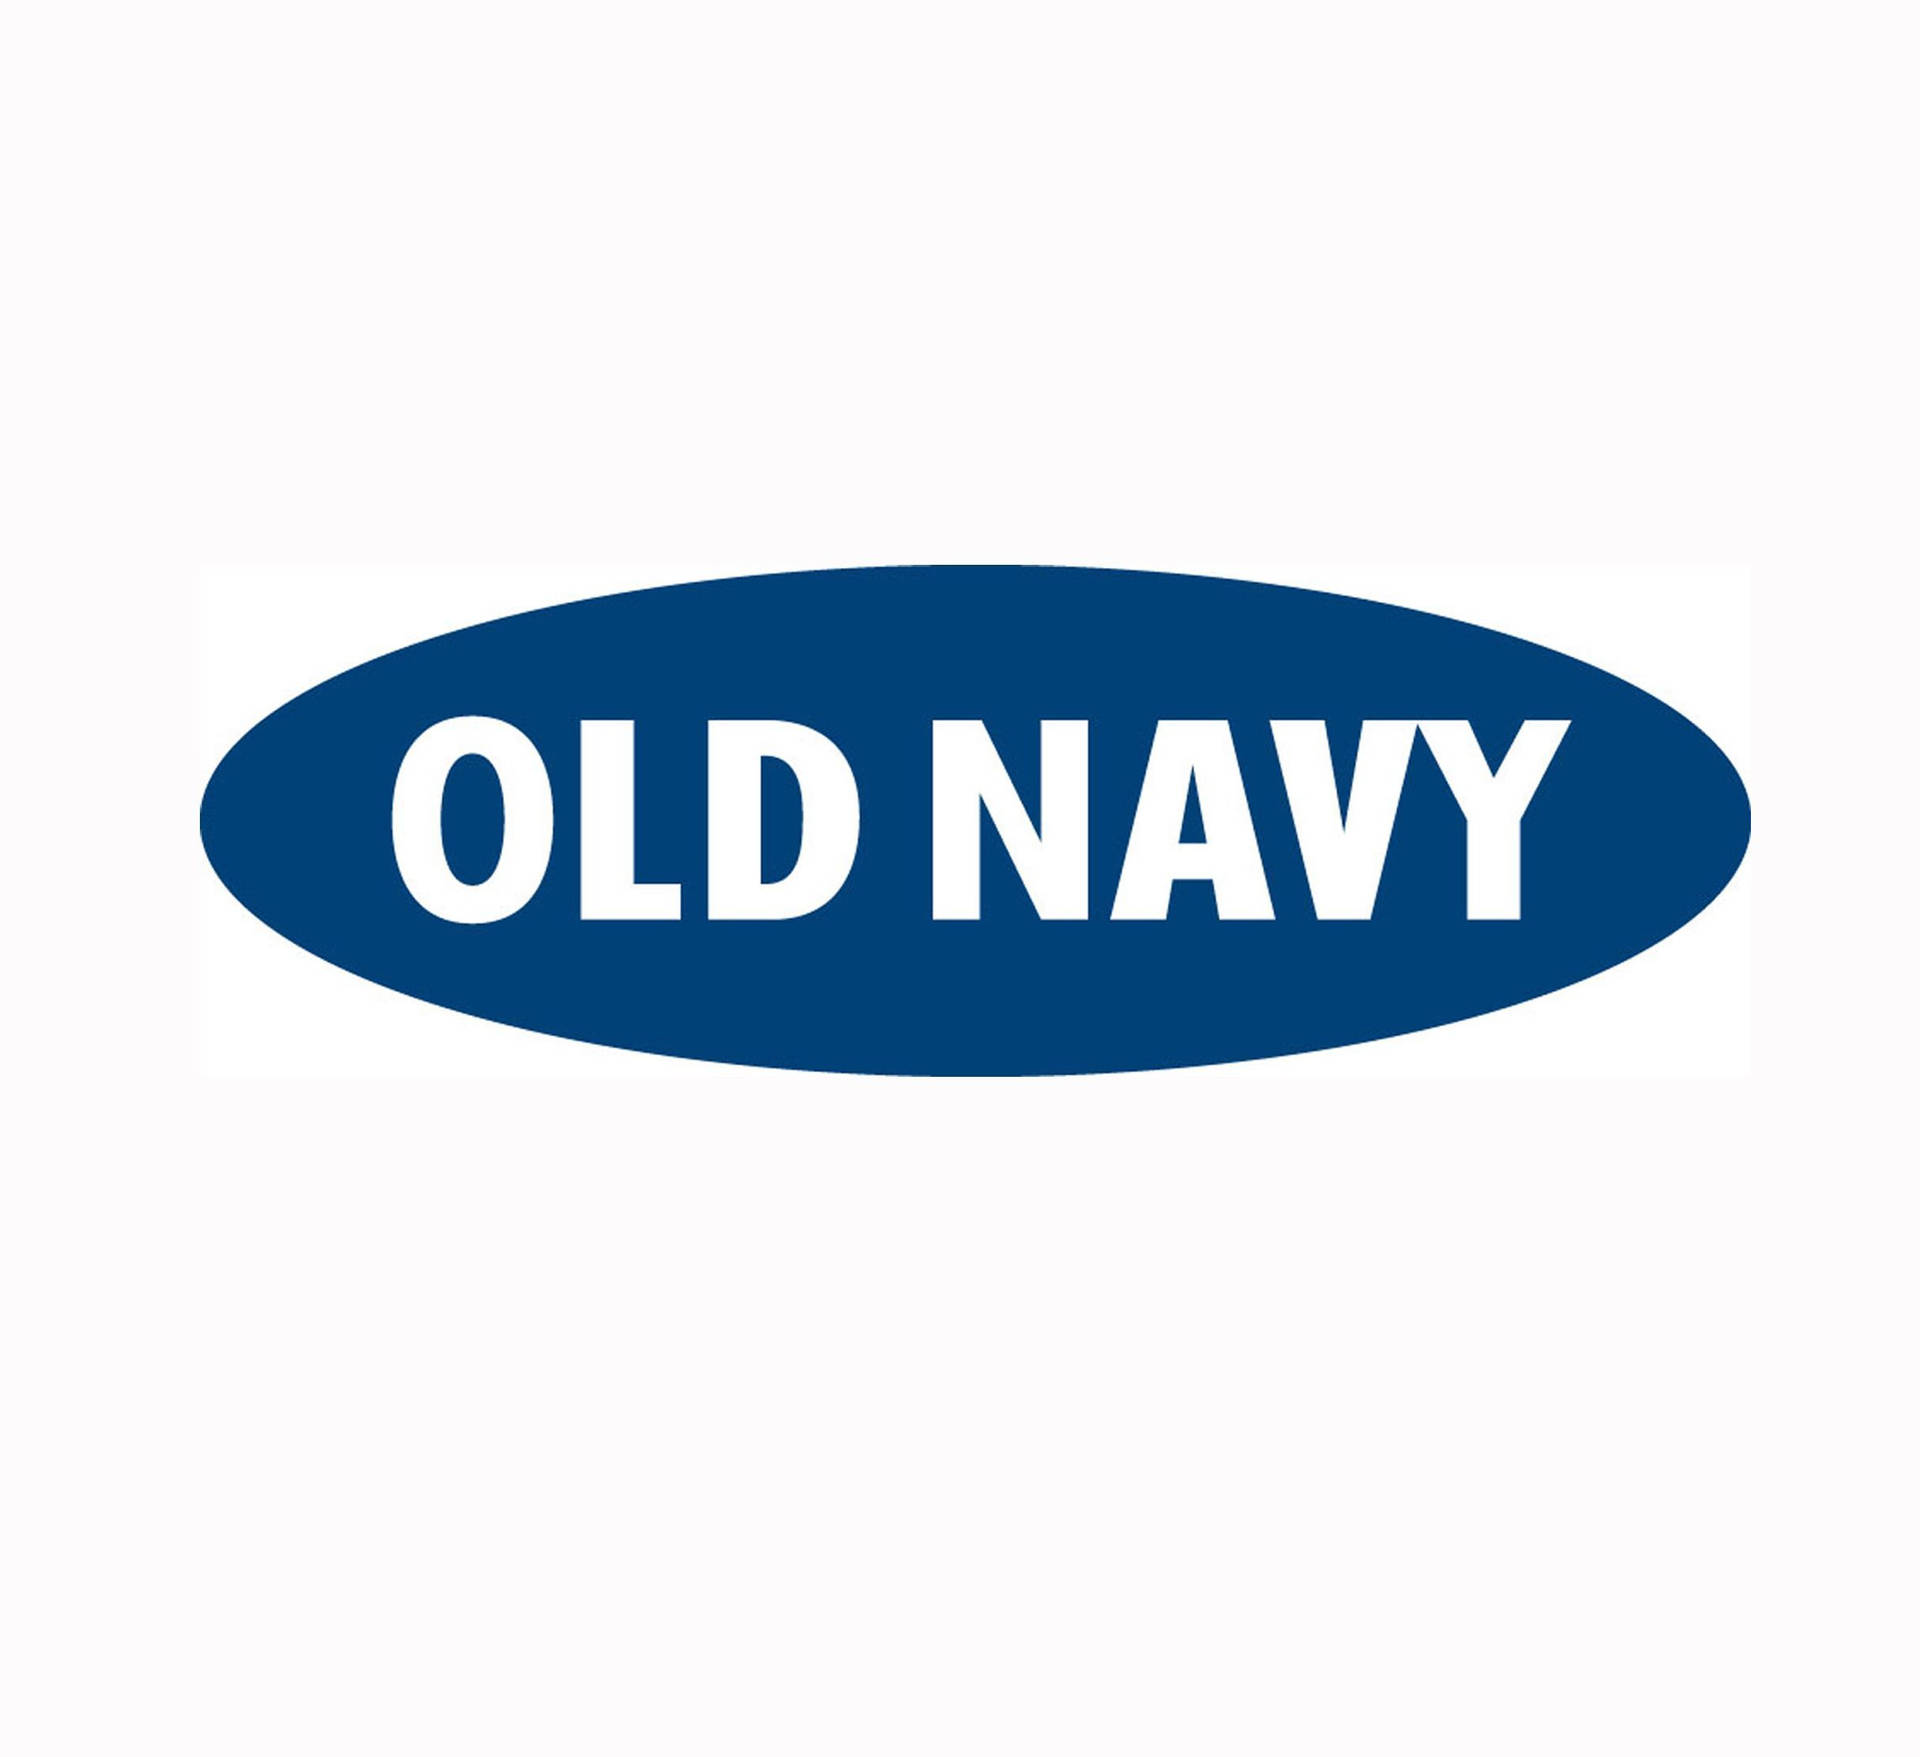 Old Navy Wallpaper